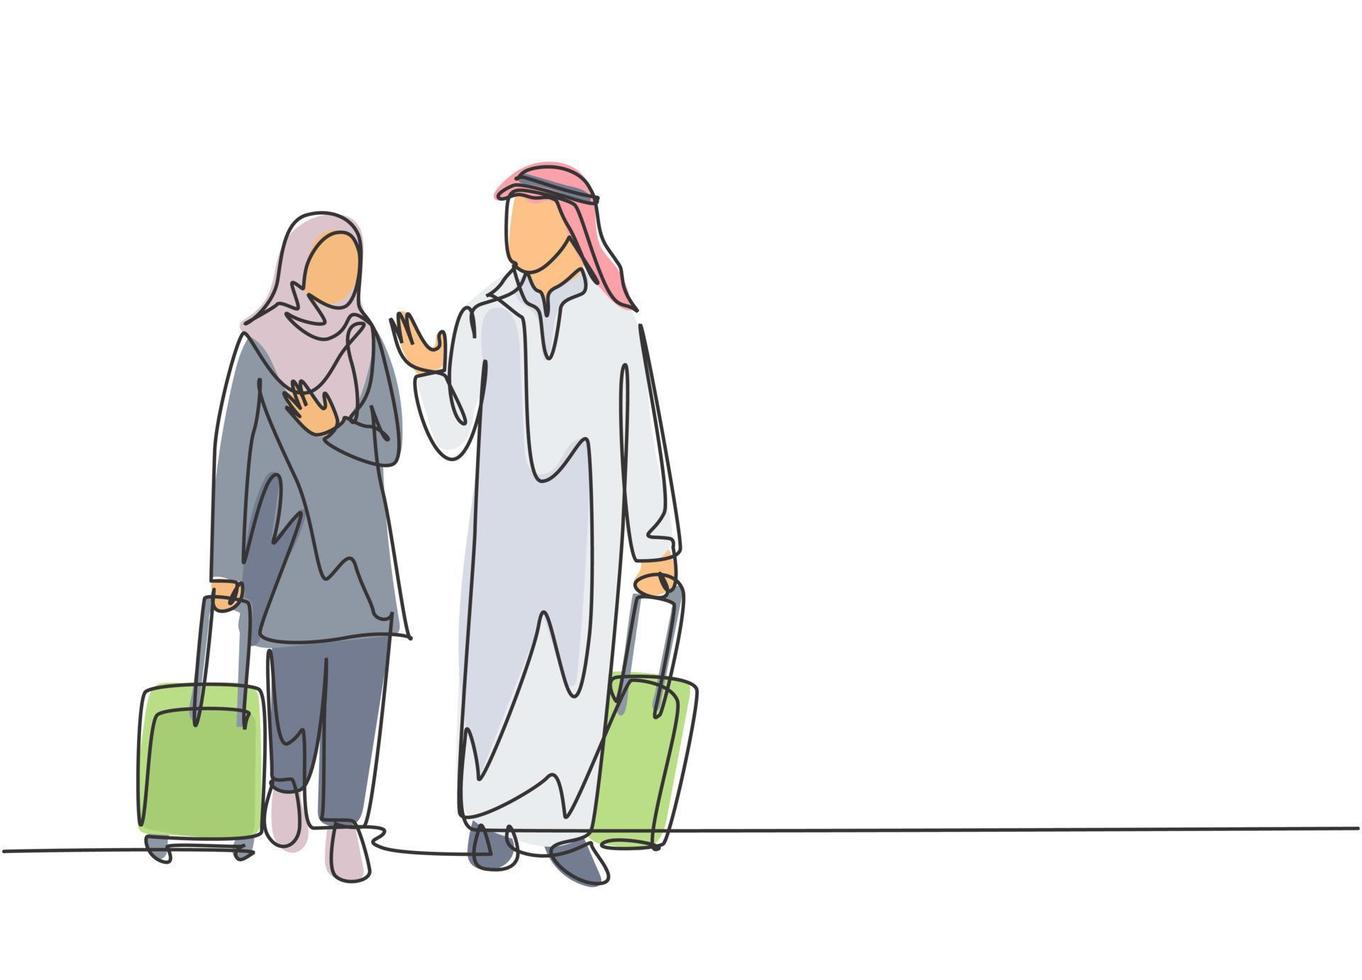 enkele doorlopende lijntekening van jonge mannelijke en vrouwelijke moslimmanagers die praten na een zakenreis naar het buitenland. Arabische Midden-Oosten doek kandura, thawb, hijab. één lijn tekenen ontwerp vectorillustratie vector